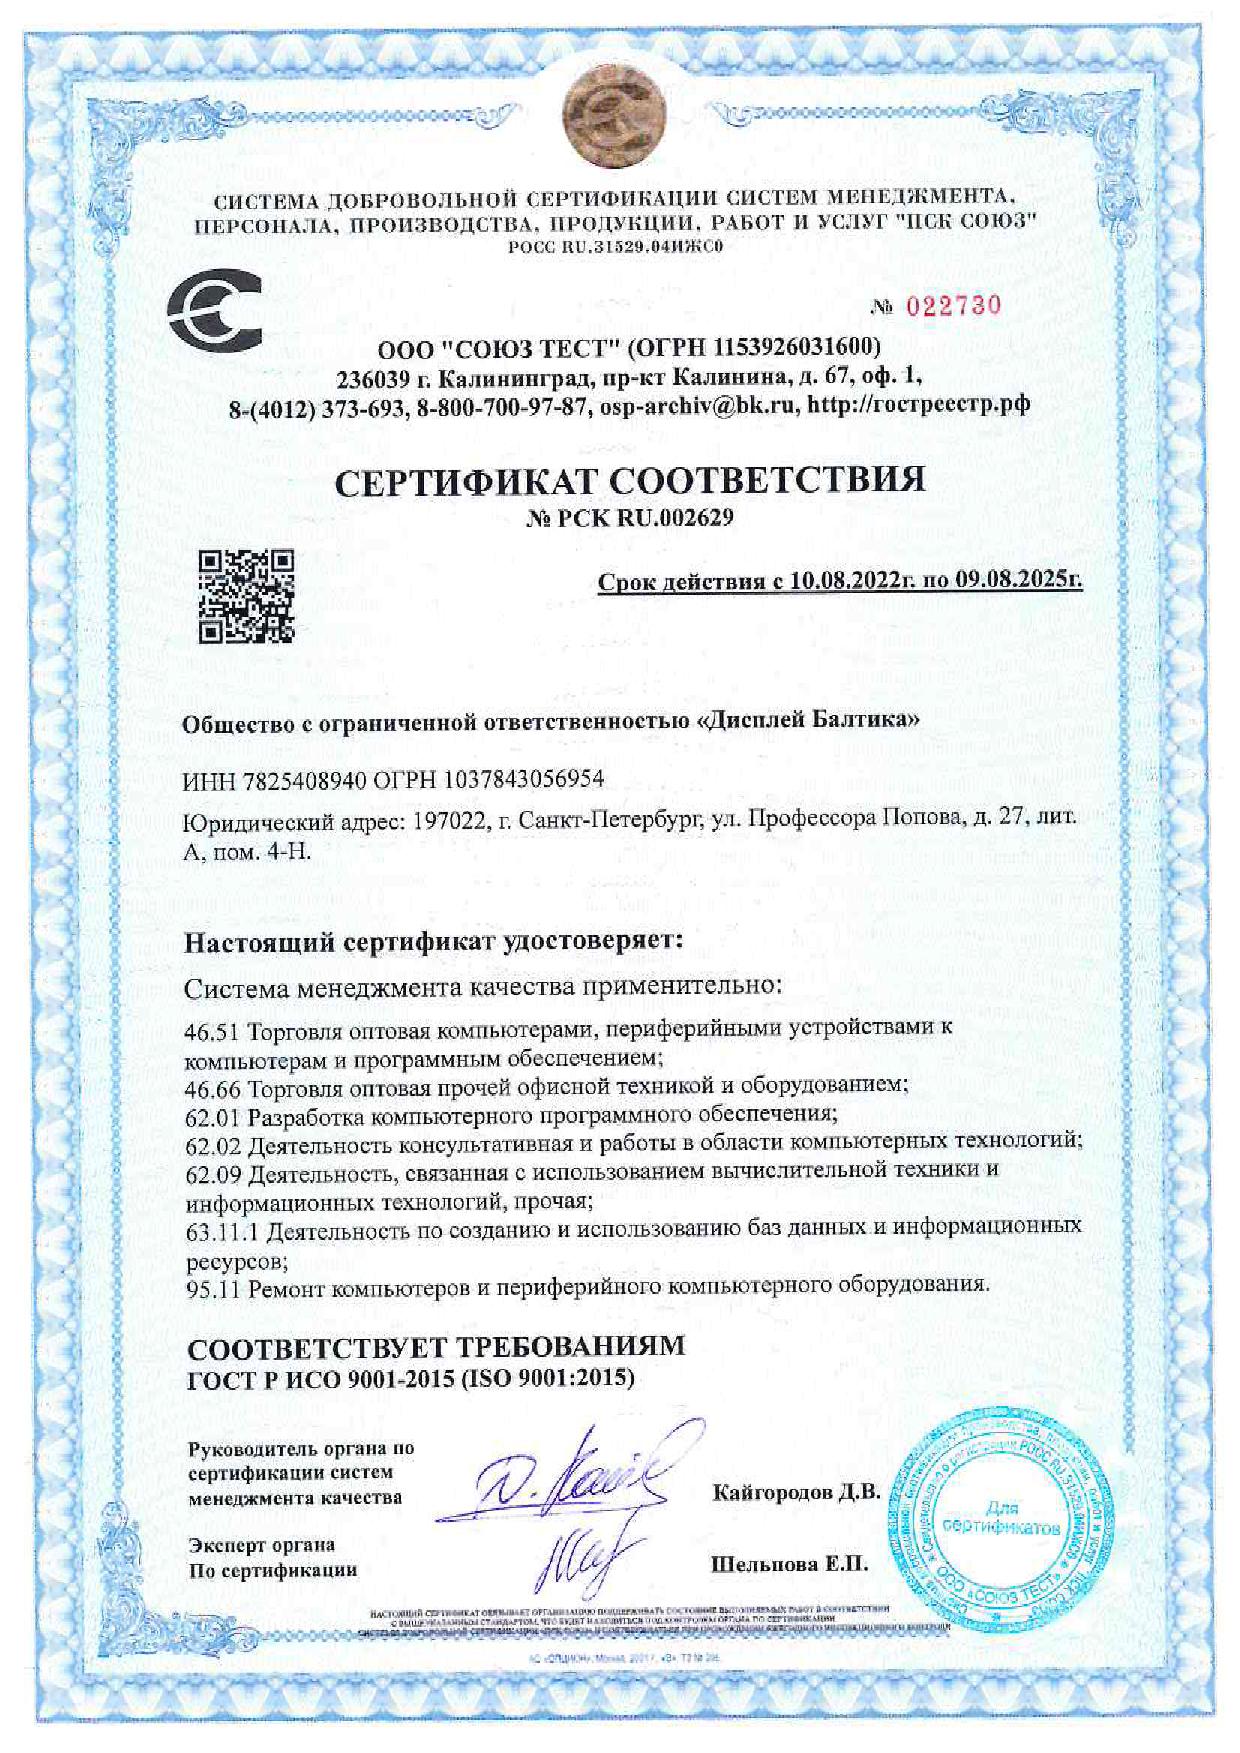 ООО "Дисплей Балтика" в очередной раз получила сертификат соответствия ИСО 9001-2015.